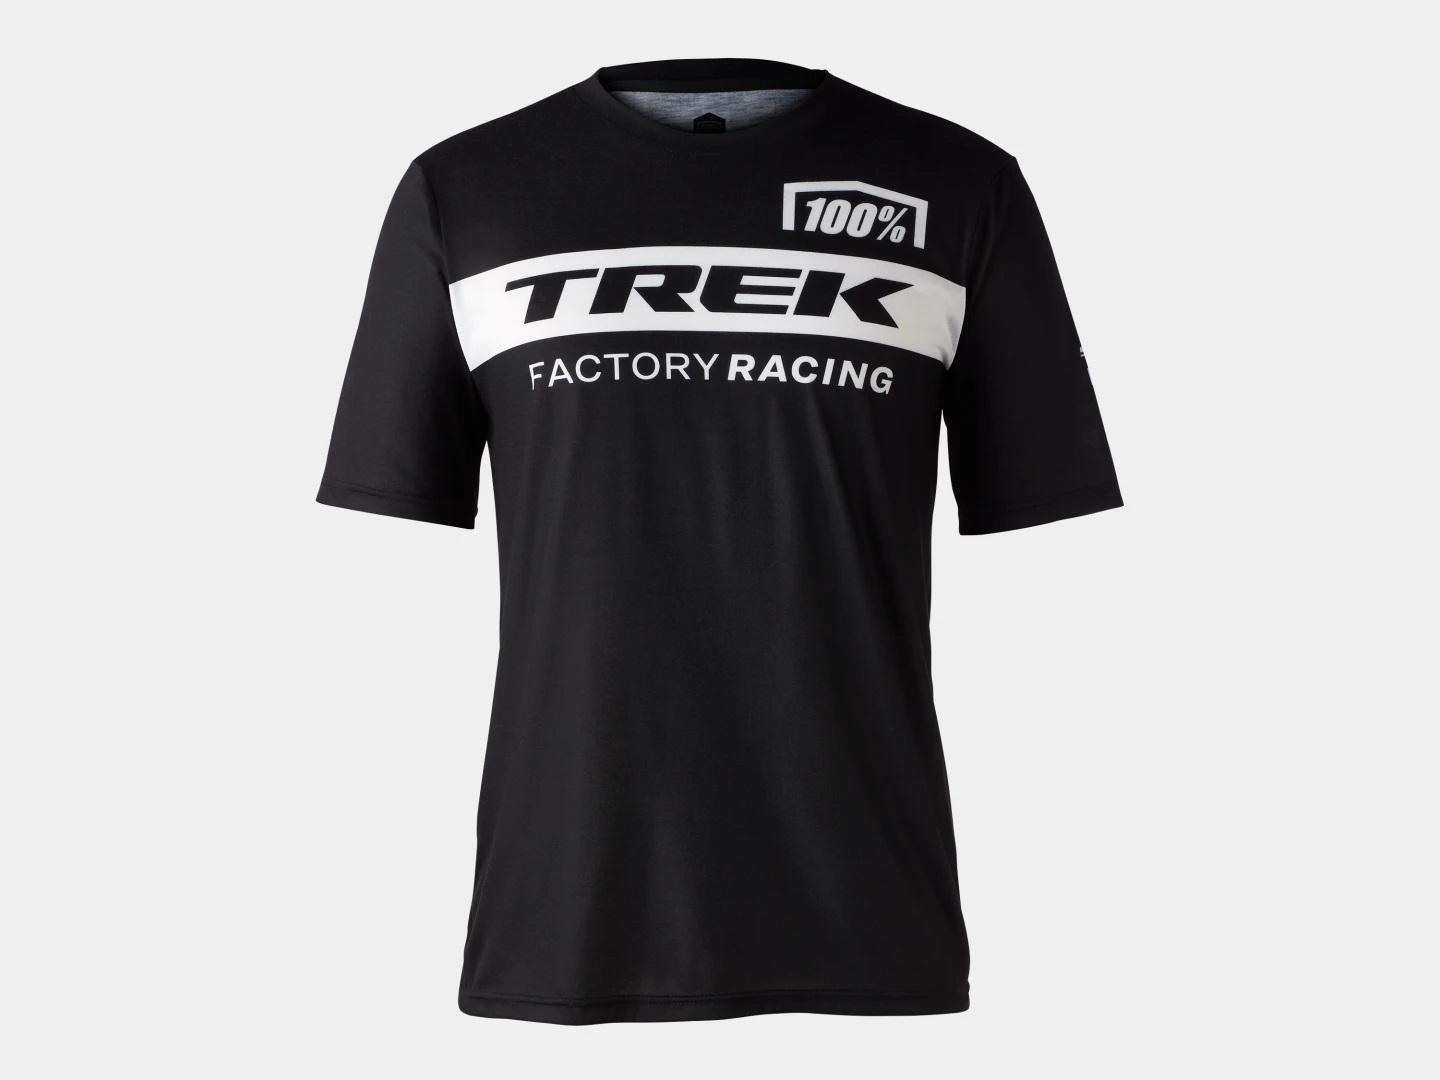 Funkční triko s dlouhými rukávy 100% Trek Factory Racing ČERNÁ M